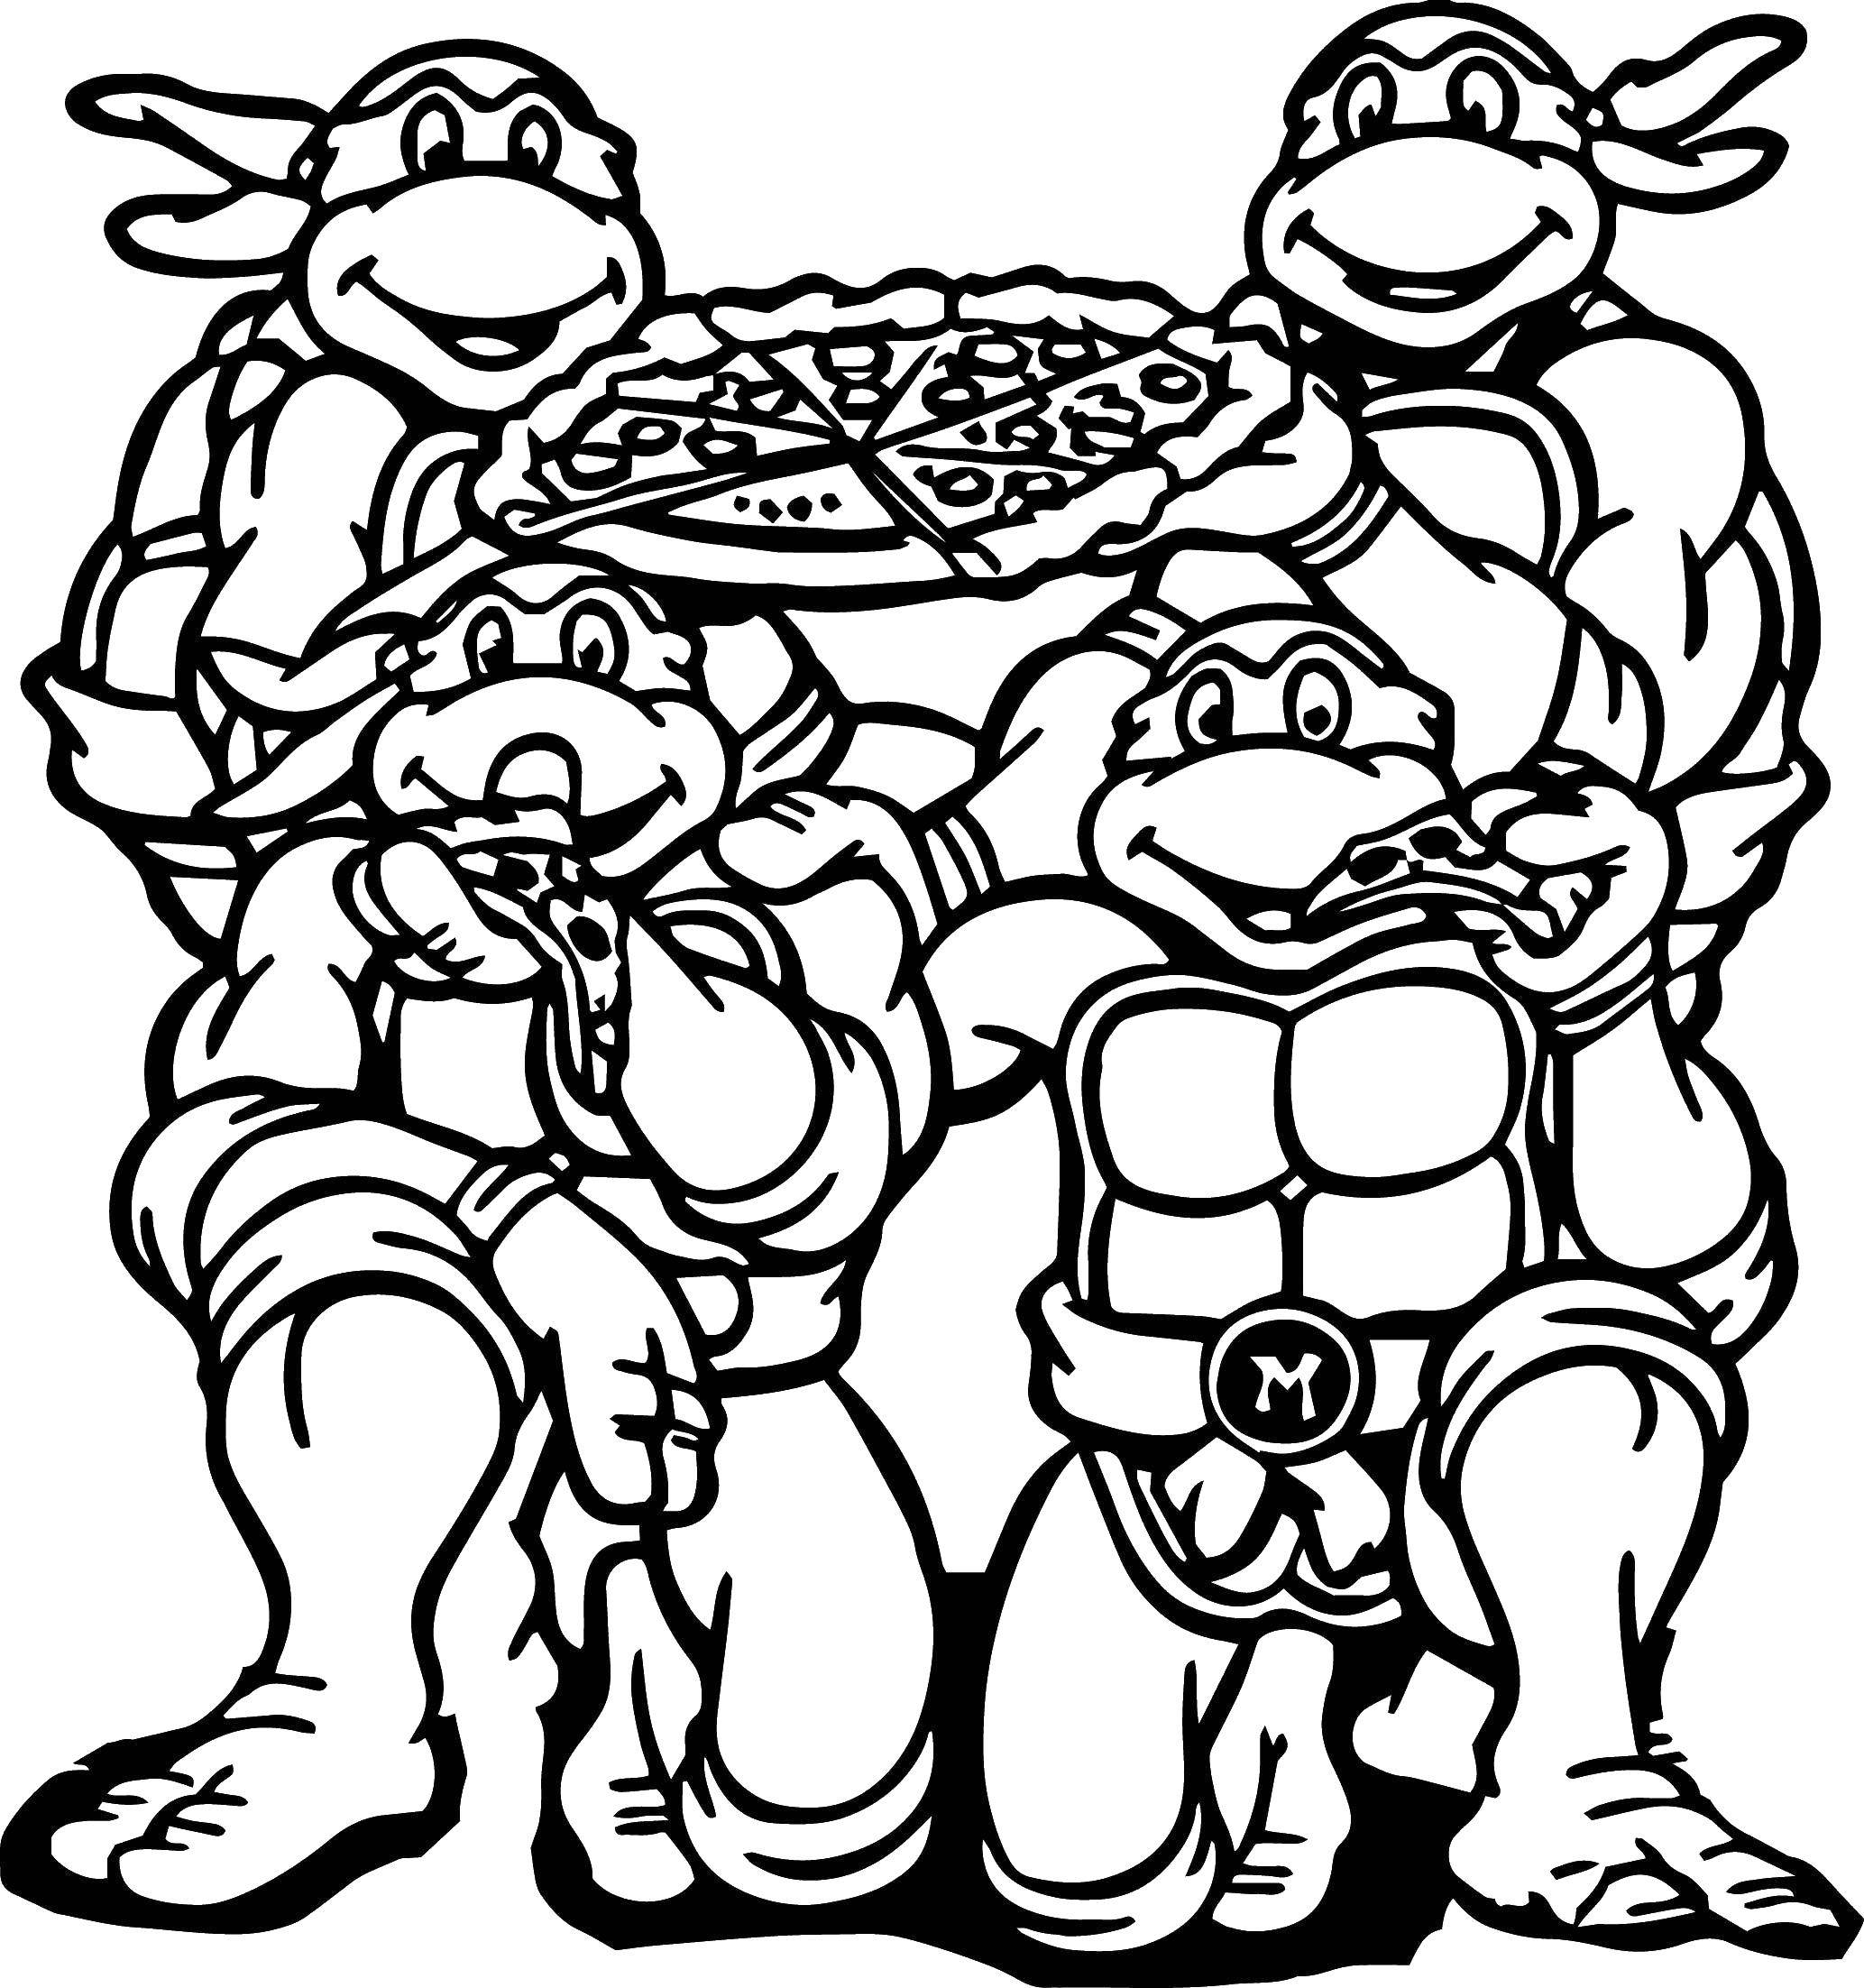 Coloring Teenage mutant ninja turtles with pizza. Category teenage mutant ninja turtles. Tags:  cartoon ninja turtles.